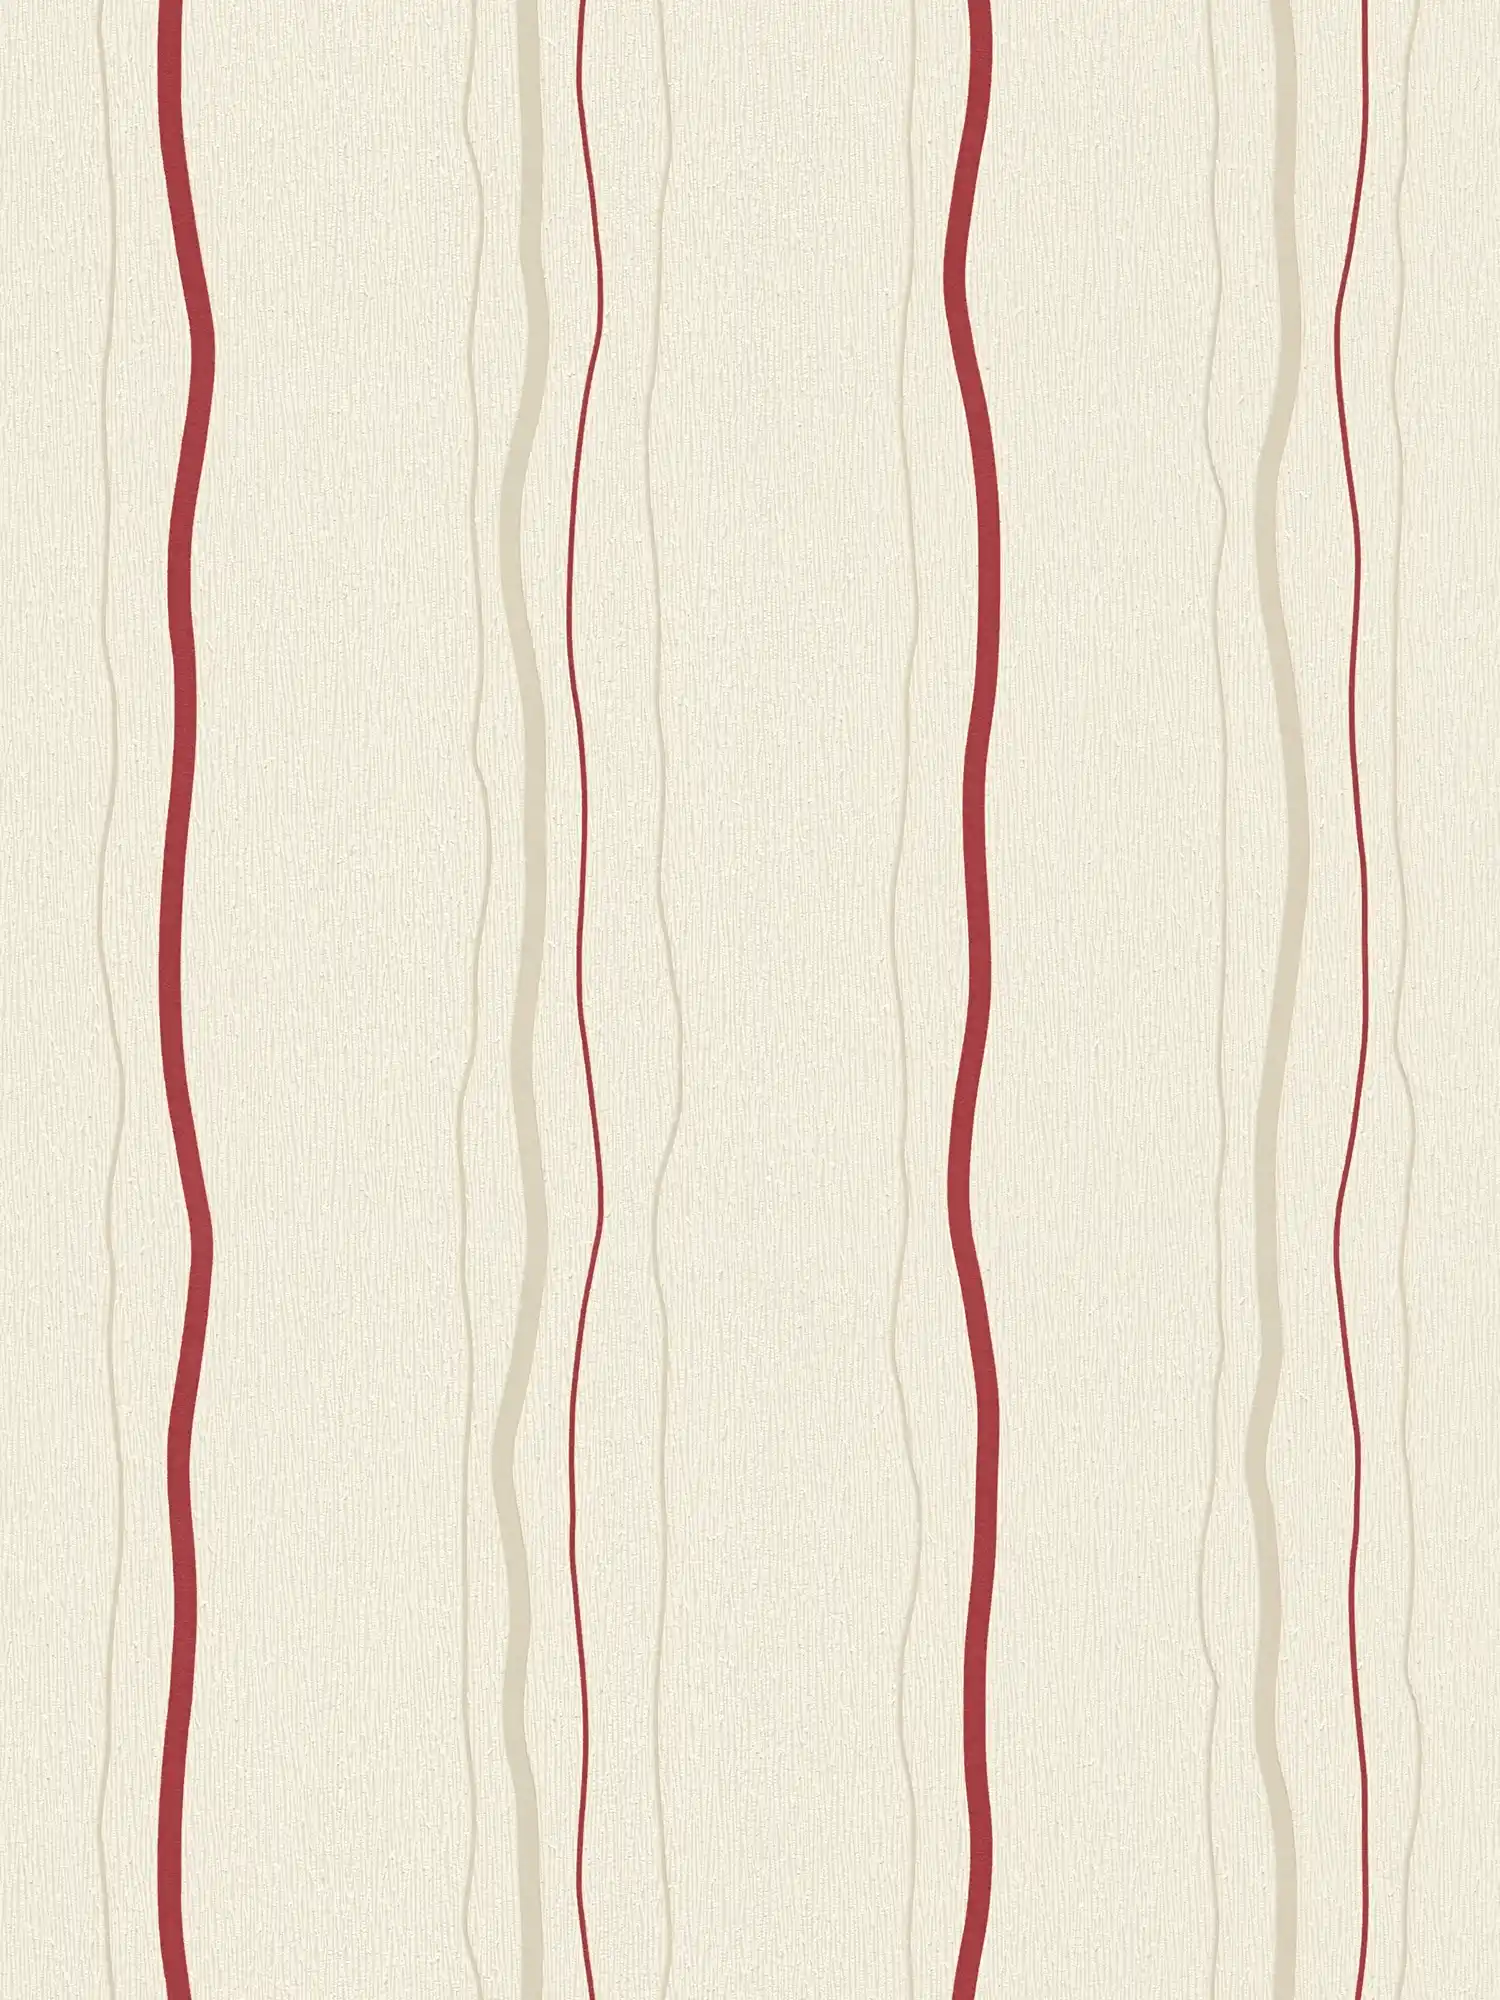 Tapete mit Linienmuster vertikal gestreift – Creme, Rot, Beige
